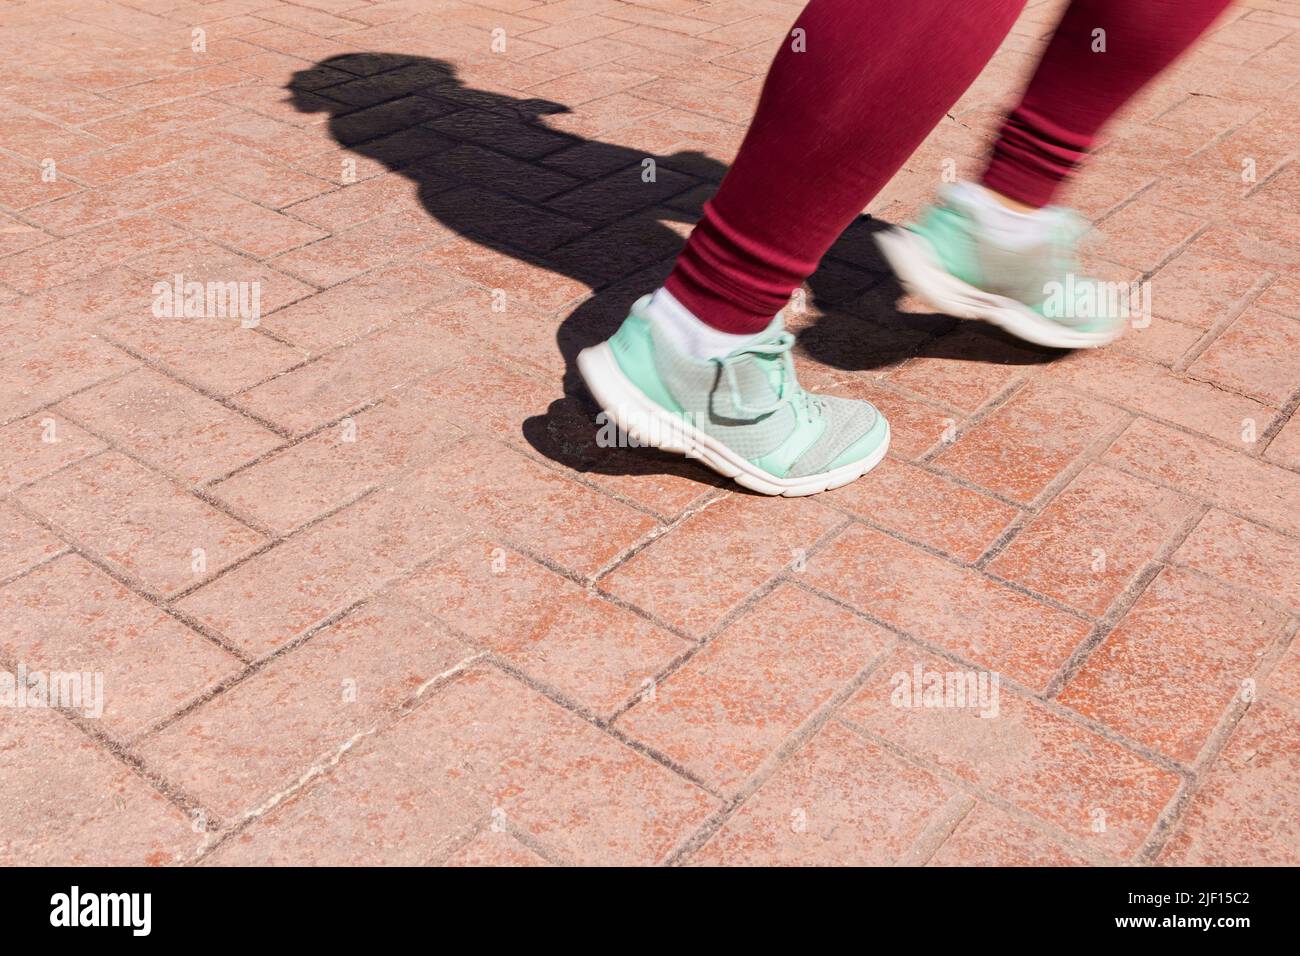 En un pavimento de concreto estampado se pueden ver los pies de una persona irreconocible que corre. Las extremidades son borrosas por el movimiento. Foto de stock